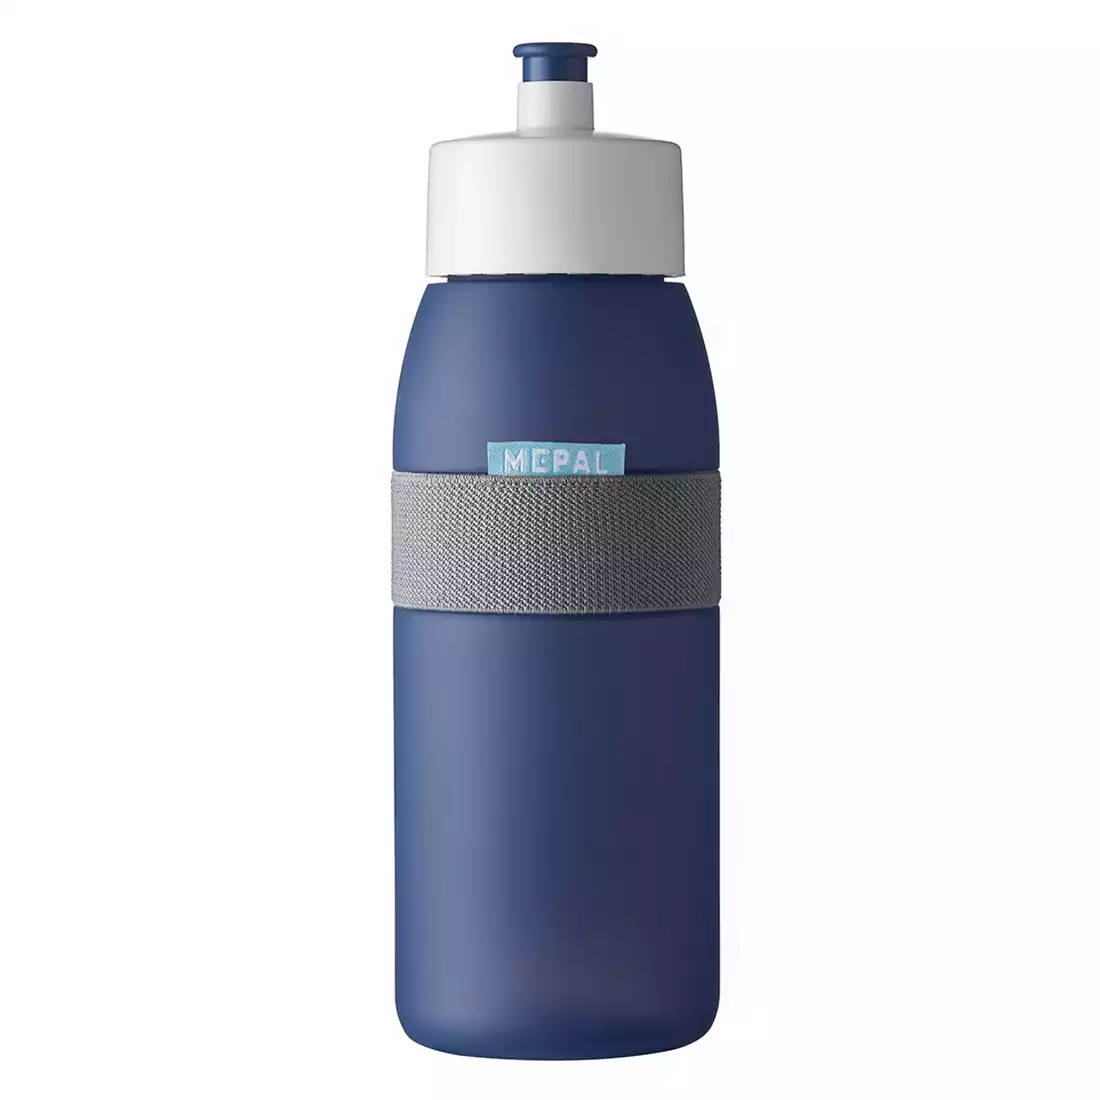 MEPAL ELLIPSE sports water bottle 500 ml dark blue